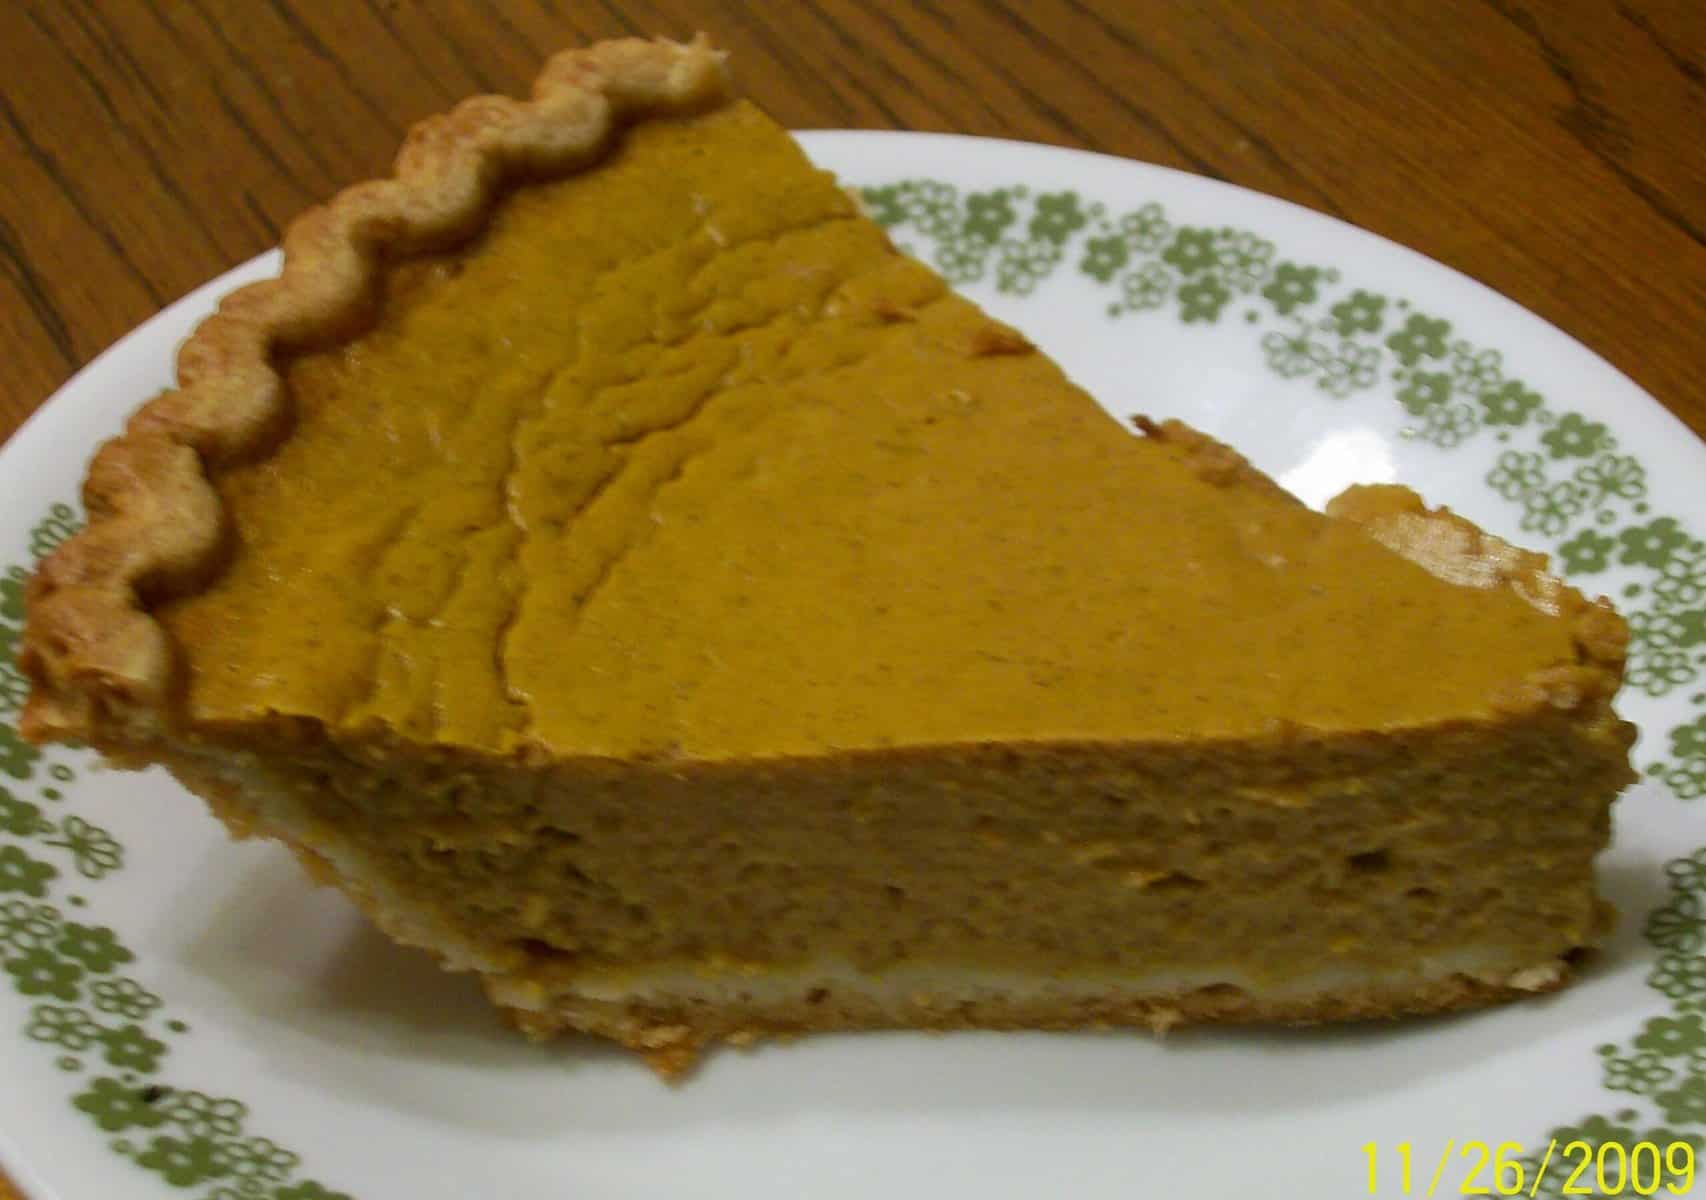 Deliciously Creamy Pumpkin Pie Recipe for Fall